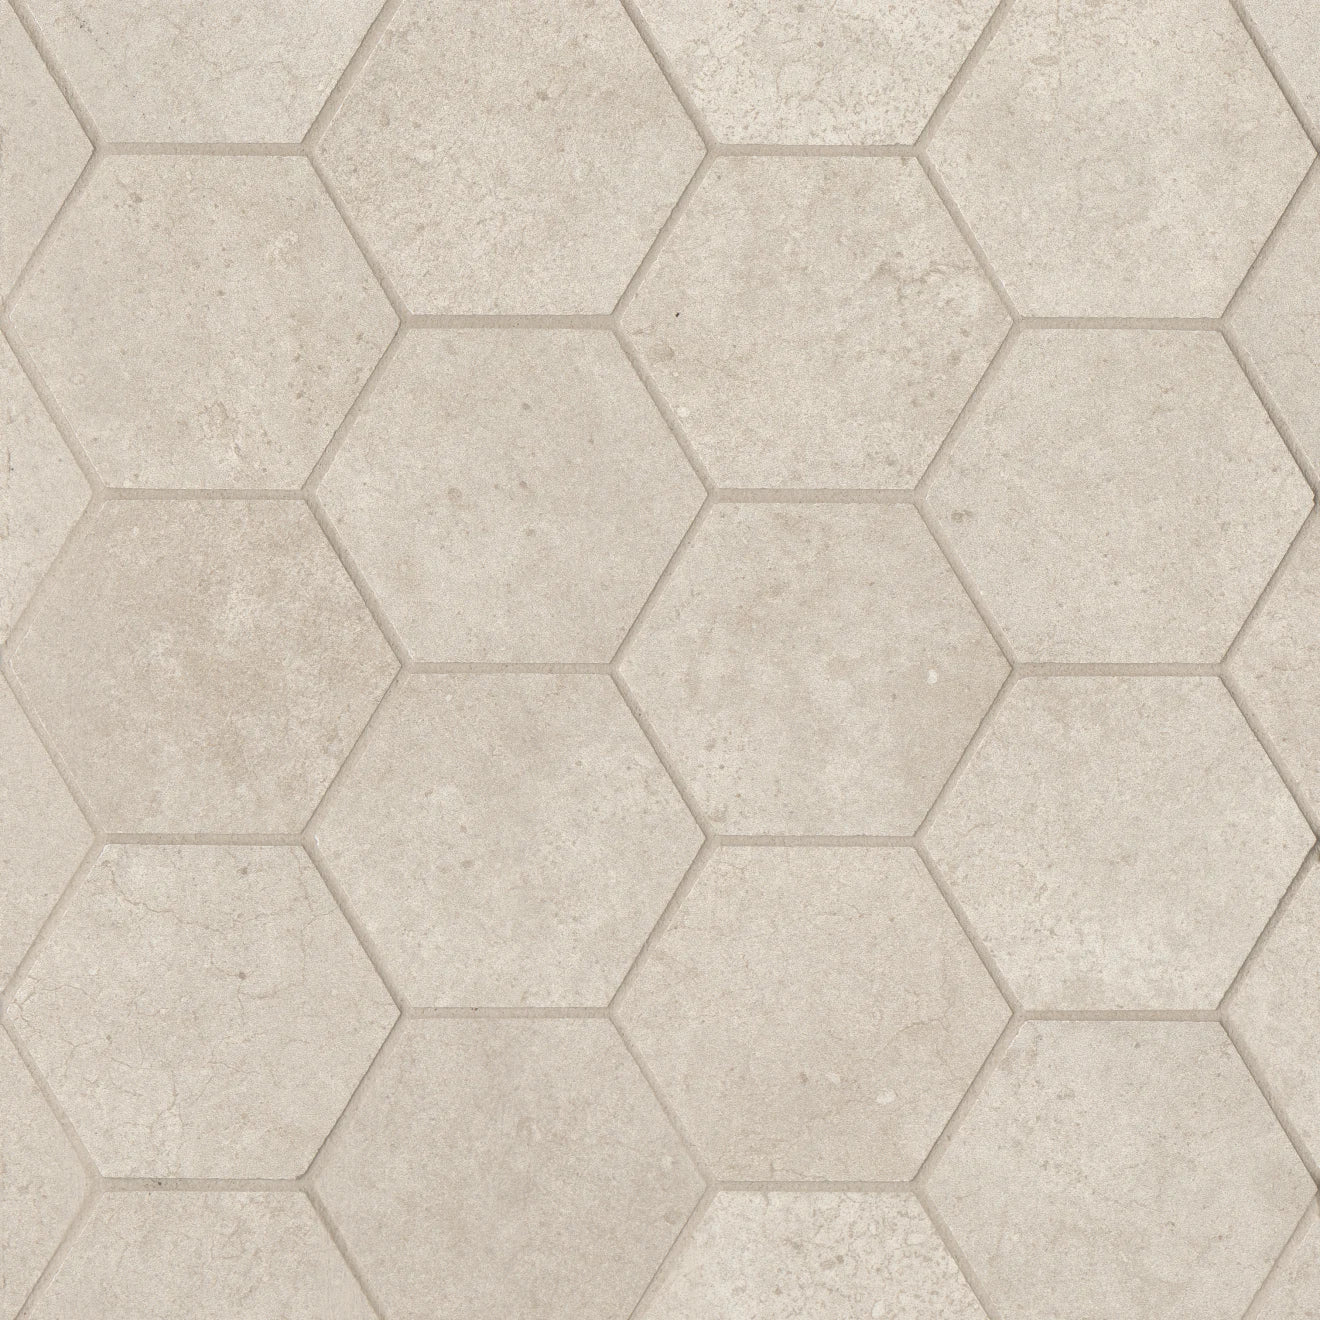 Materika Hexagon Mosaic Tile